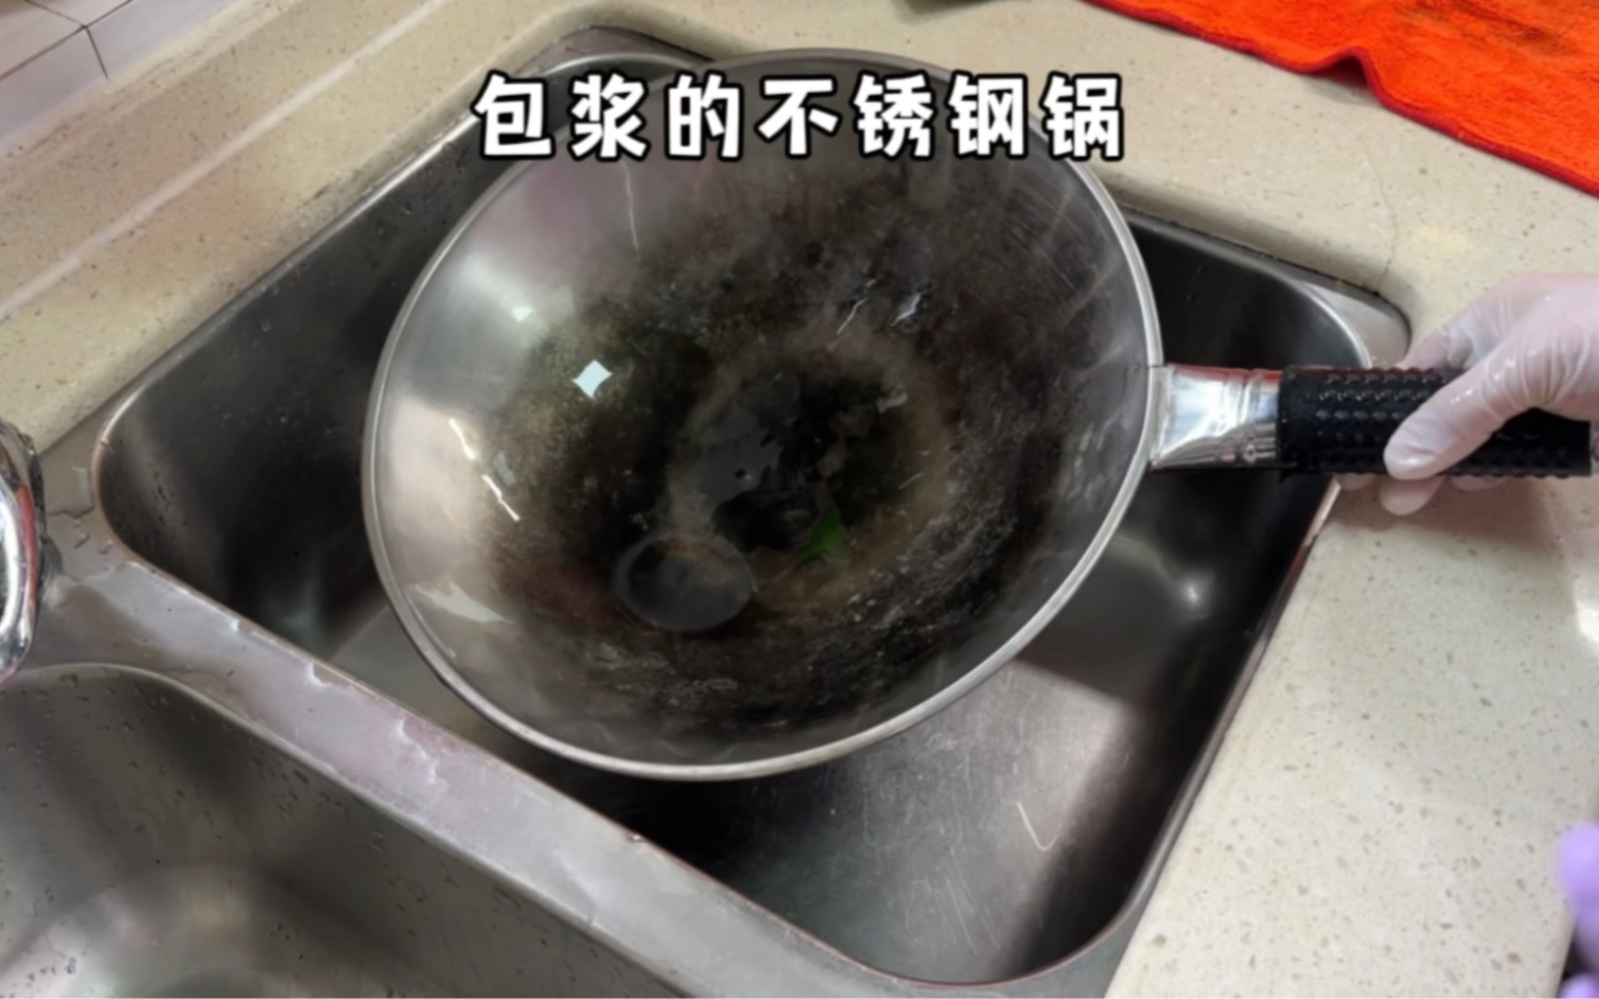 如果你家里有包浆的不锈钢锅很难清洗，试试这个办法，我知道你们肯定比这个程度要轻，那效果会非常好的#爆炸盐 #洗锅 #不锈钢锅